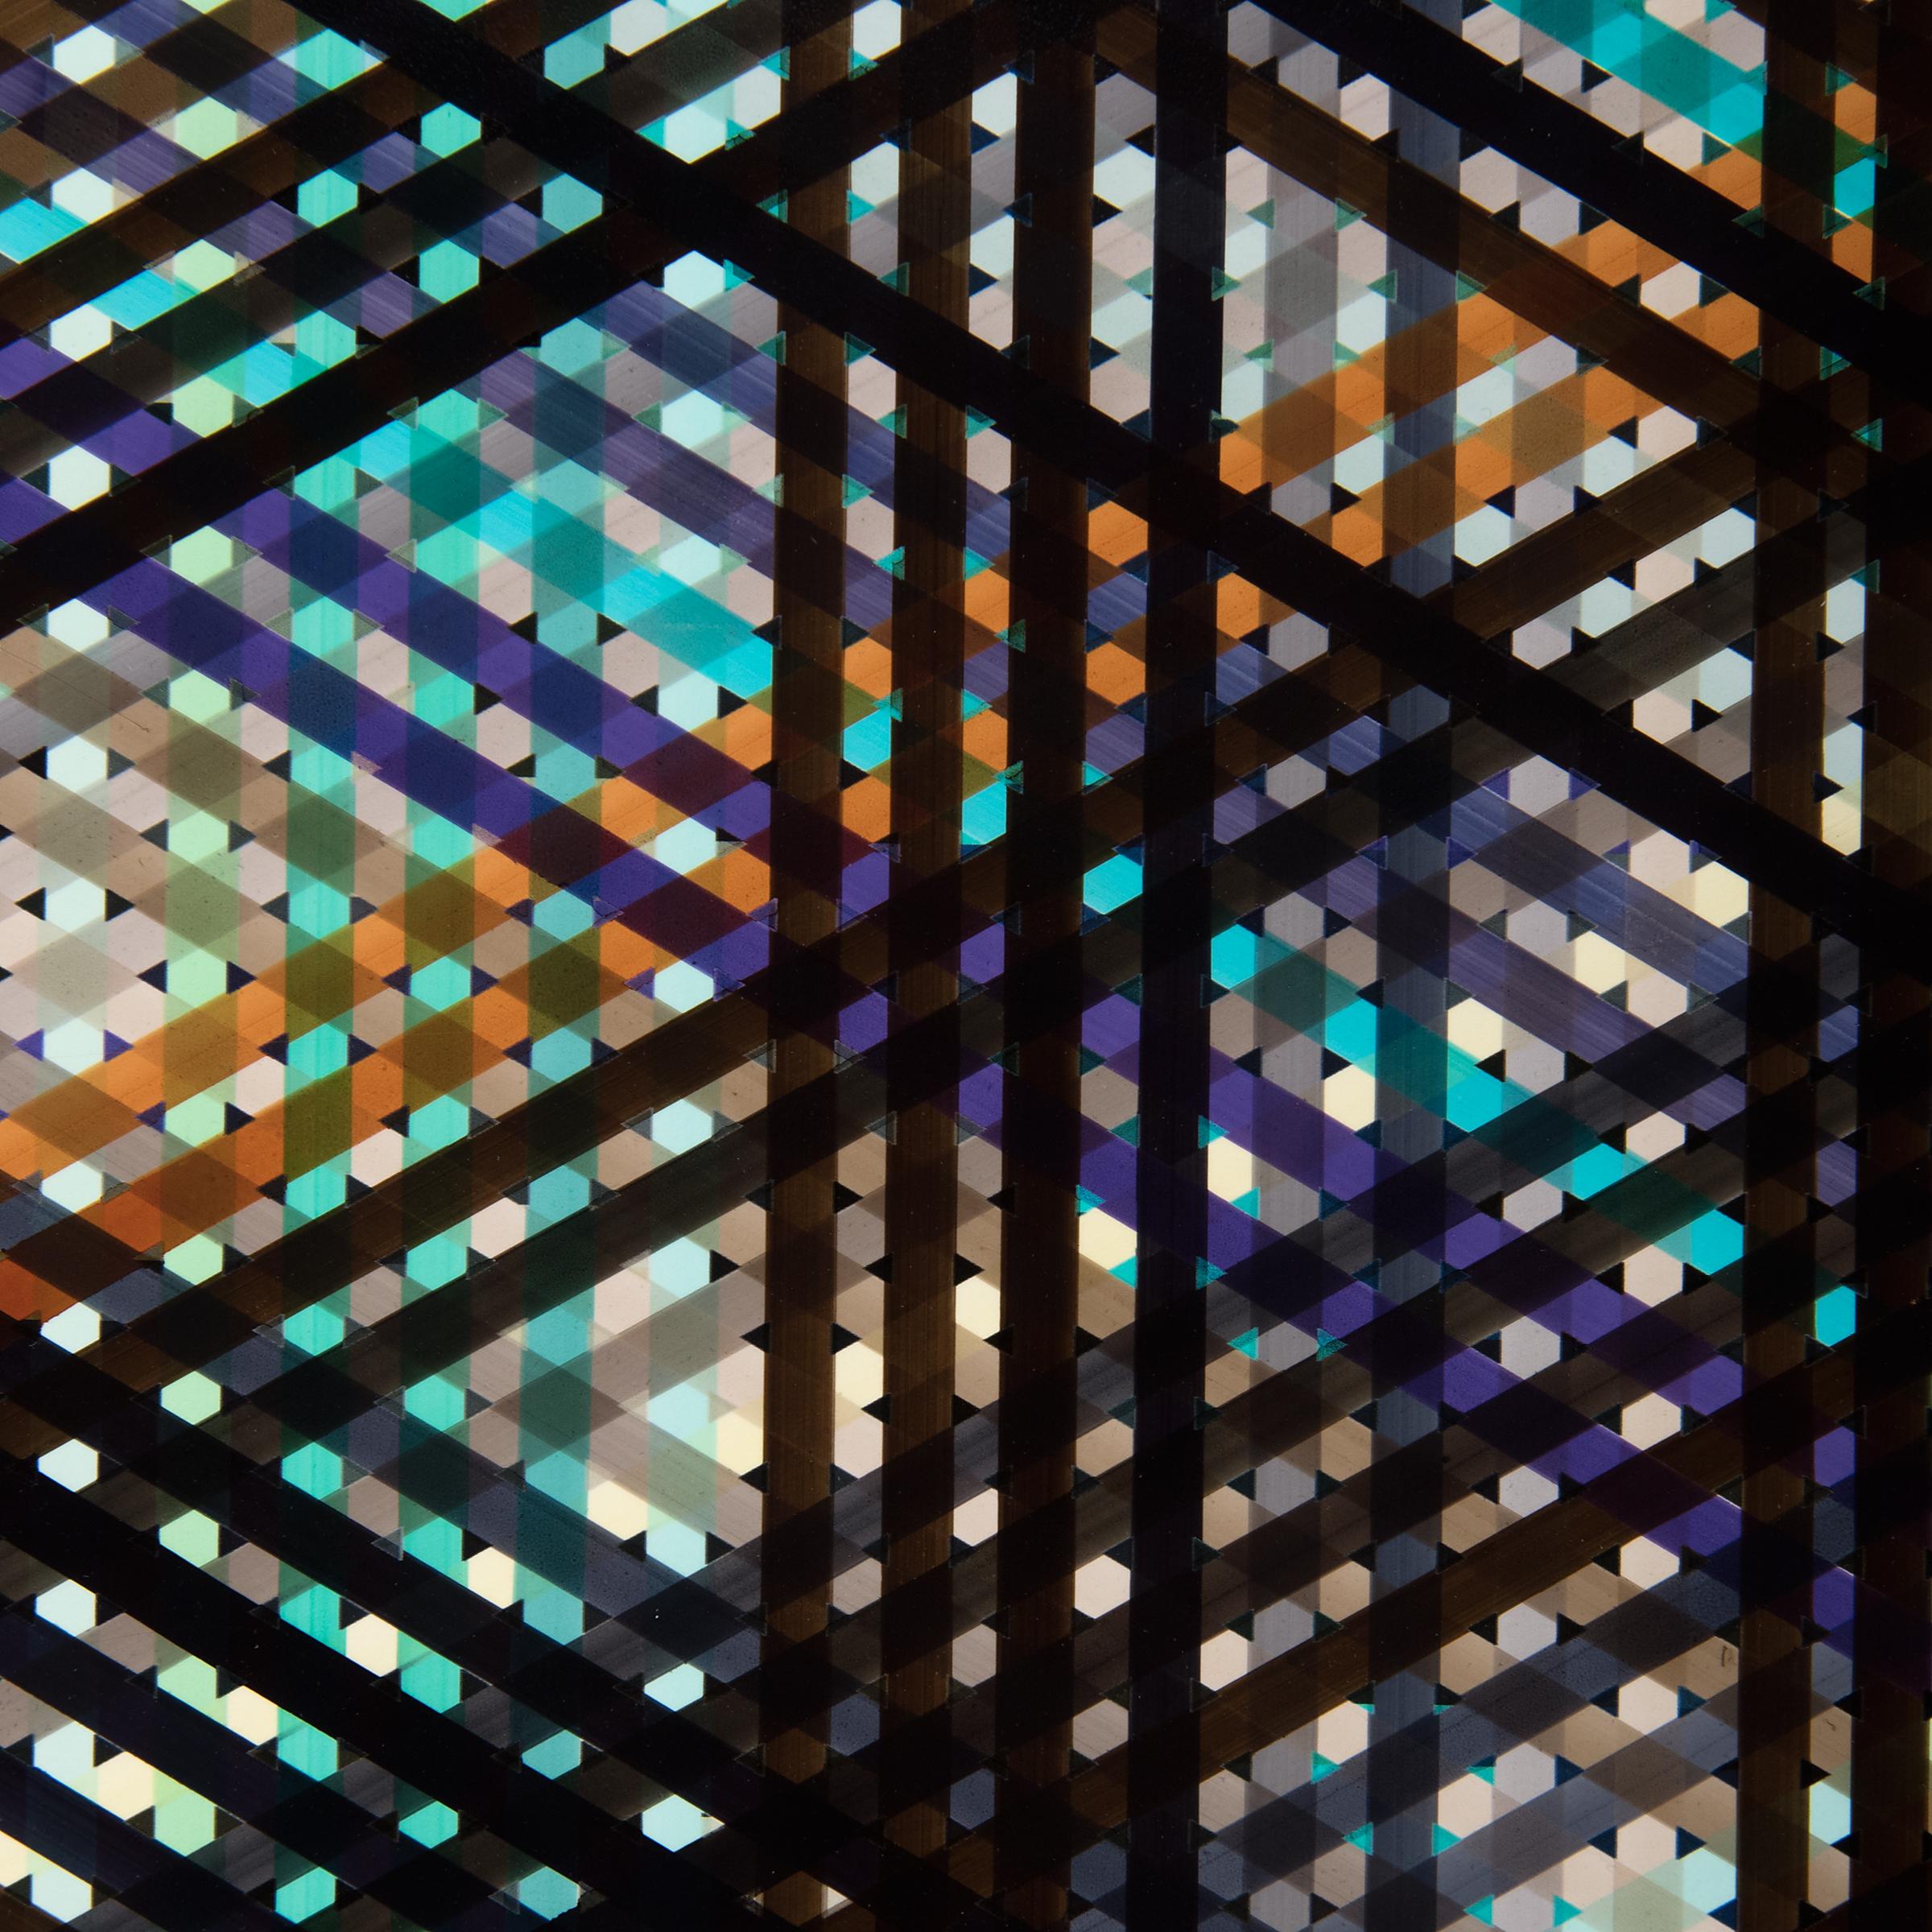 Pigmenttinte „E0102-72.3“ auf Fotopapier, 2020 (Geometrische Abstraktion), Art, von Jan Pieter Fokkens